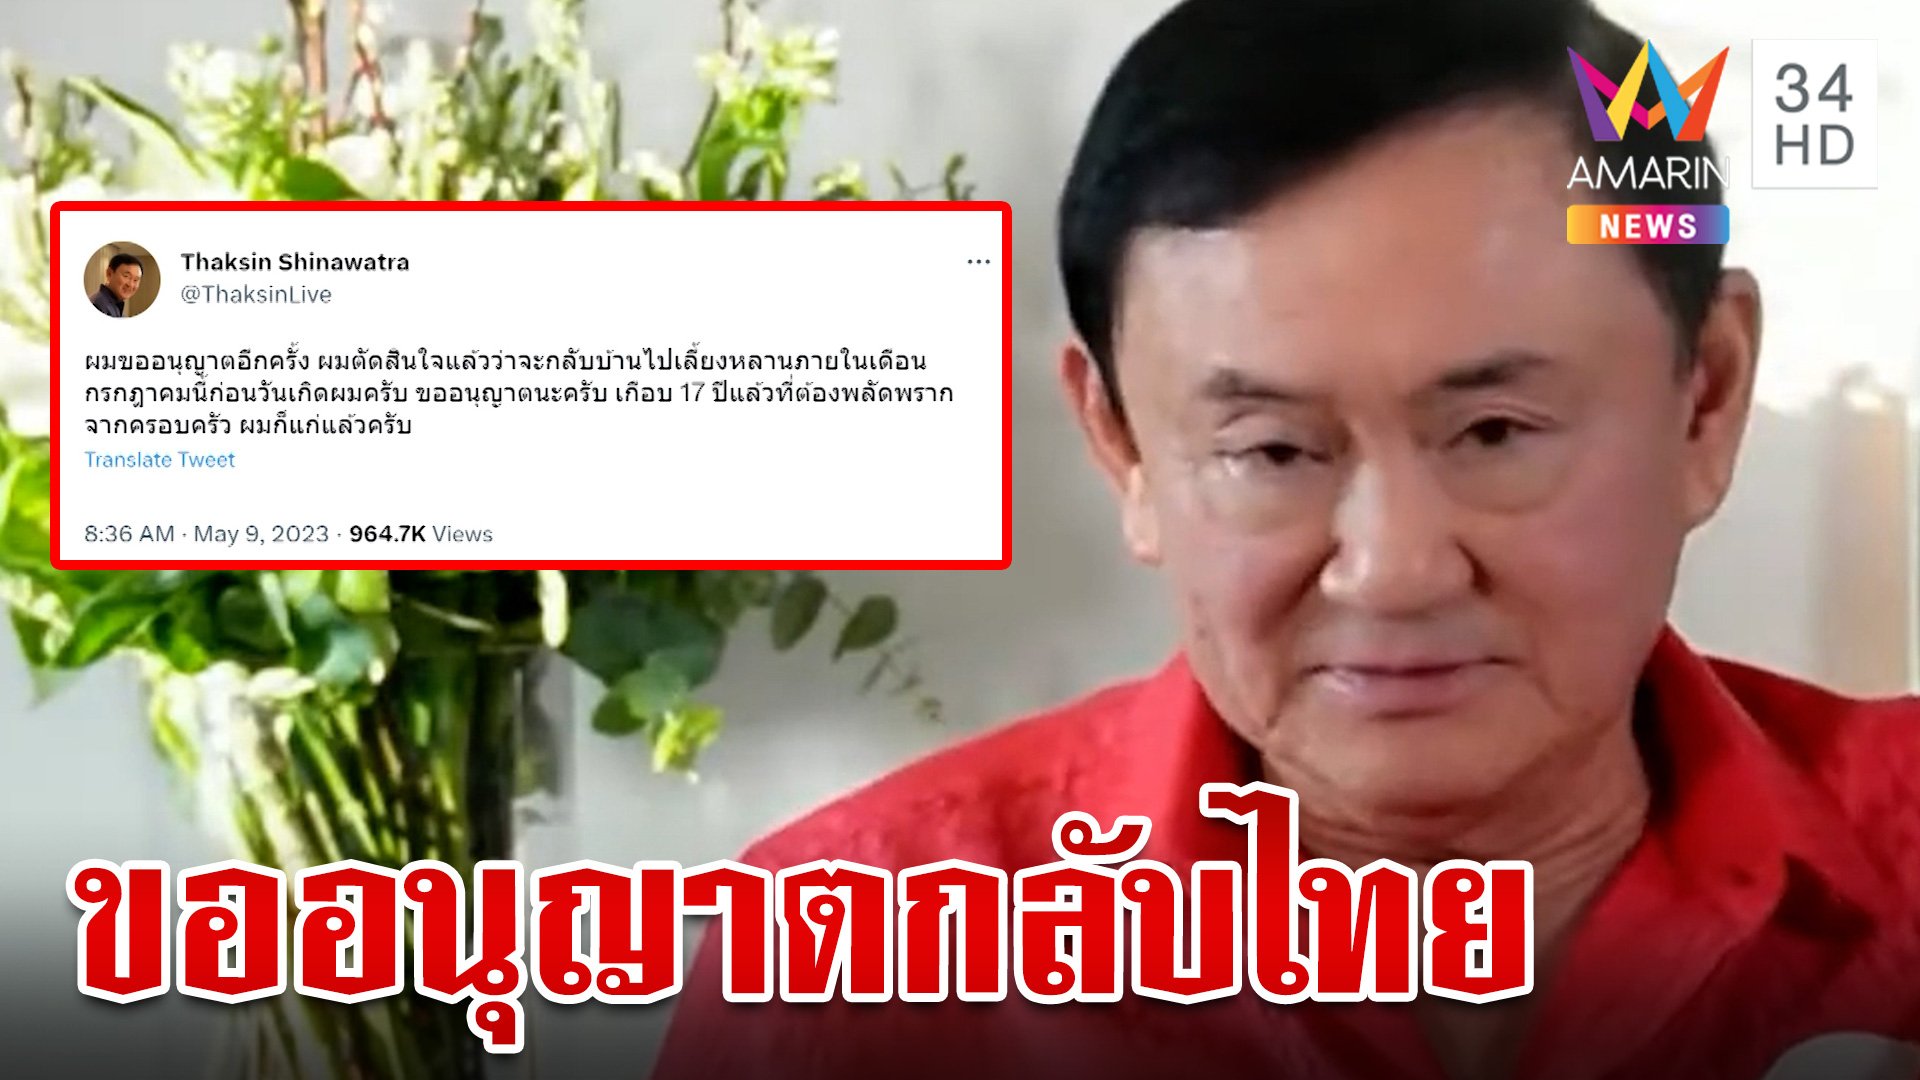 "ทักษิณ" ลั่นขอกลับไทยเลี้ยงหลานก่อนวันเกิด | ทุบโต๊ะข่าว | 9 พ.ค. 66 | AMARIN TVHD34